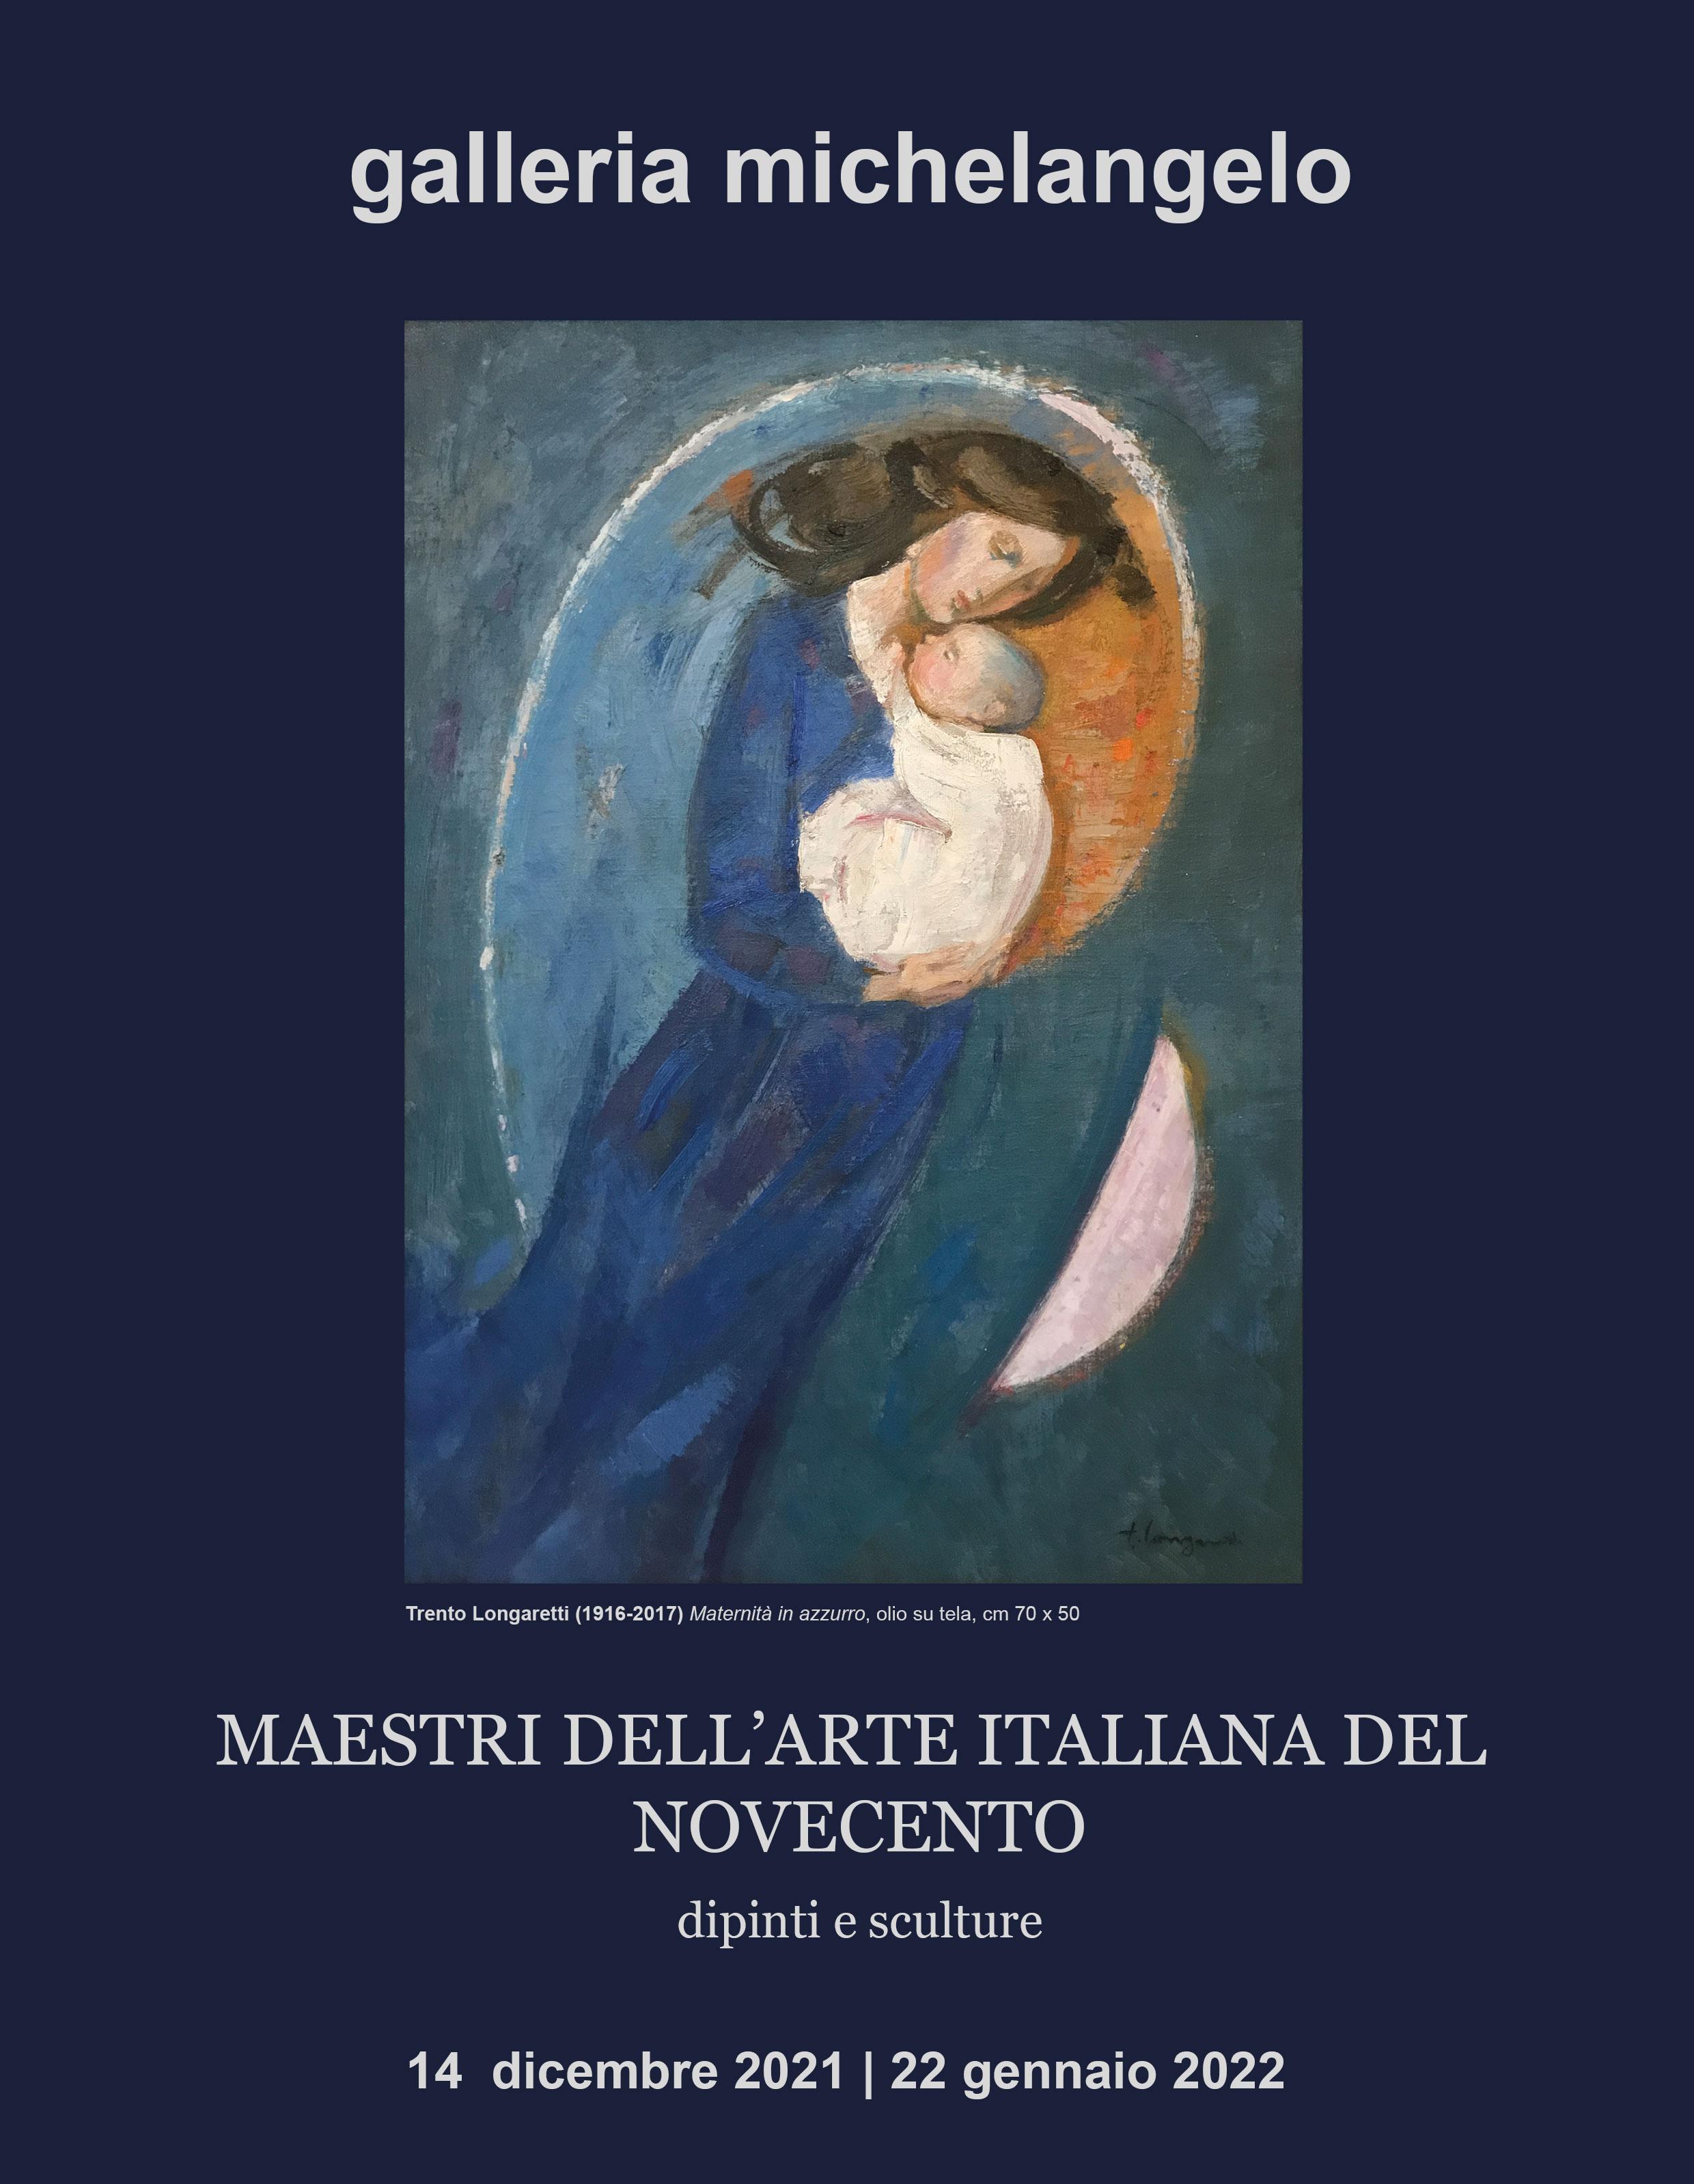 Maestri dell'Arte Italiana del Novecento - Dipinti e sculture